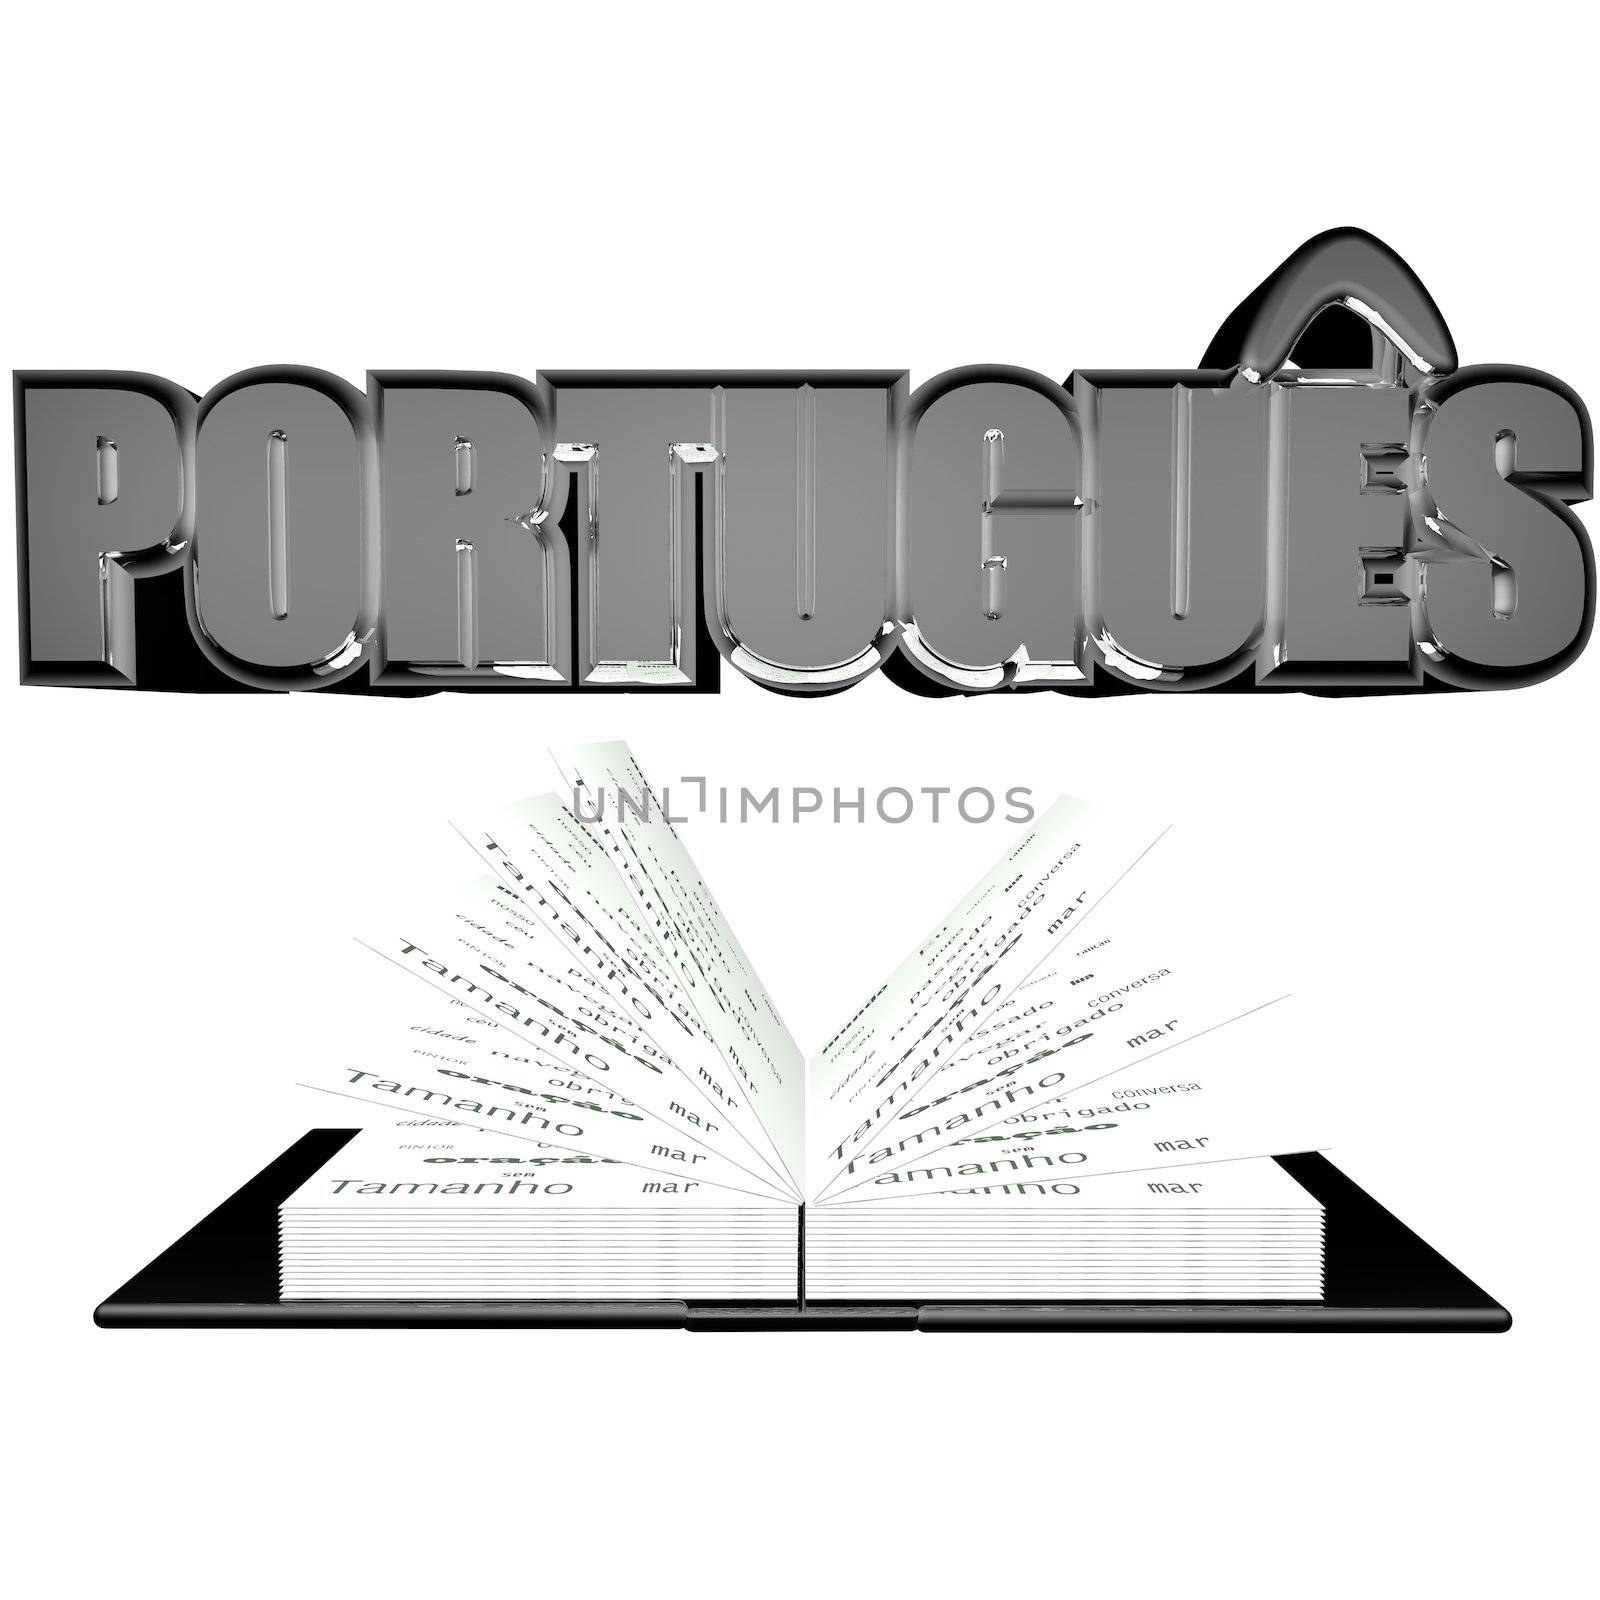 Portuguese by Koufax73